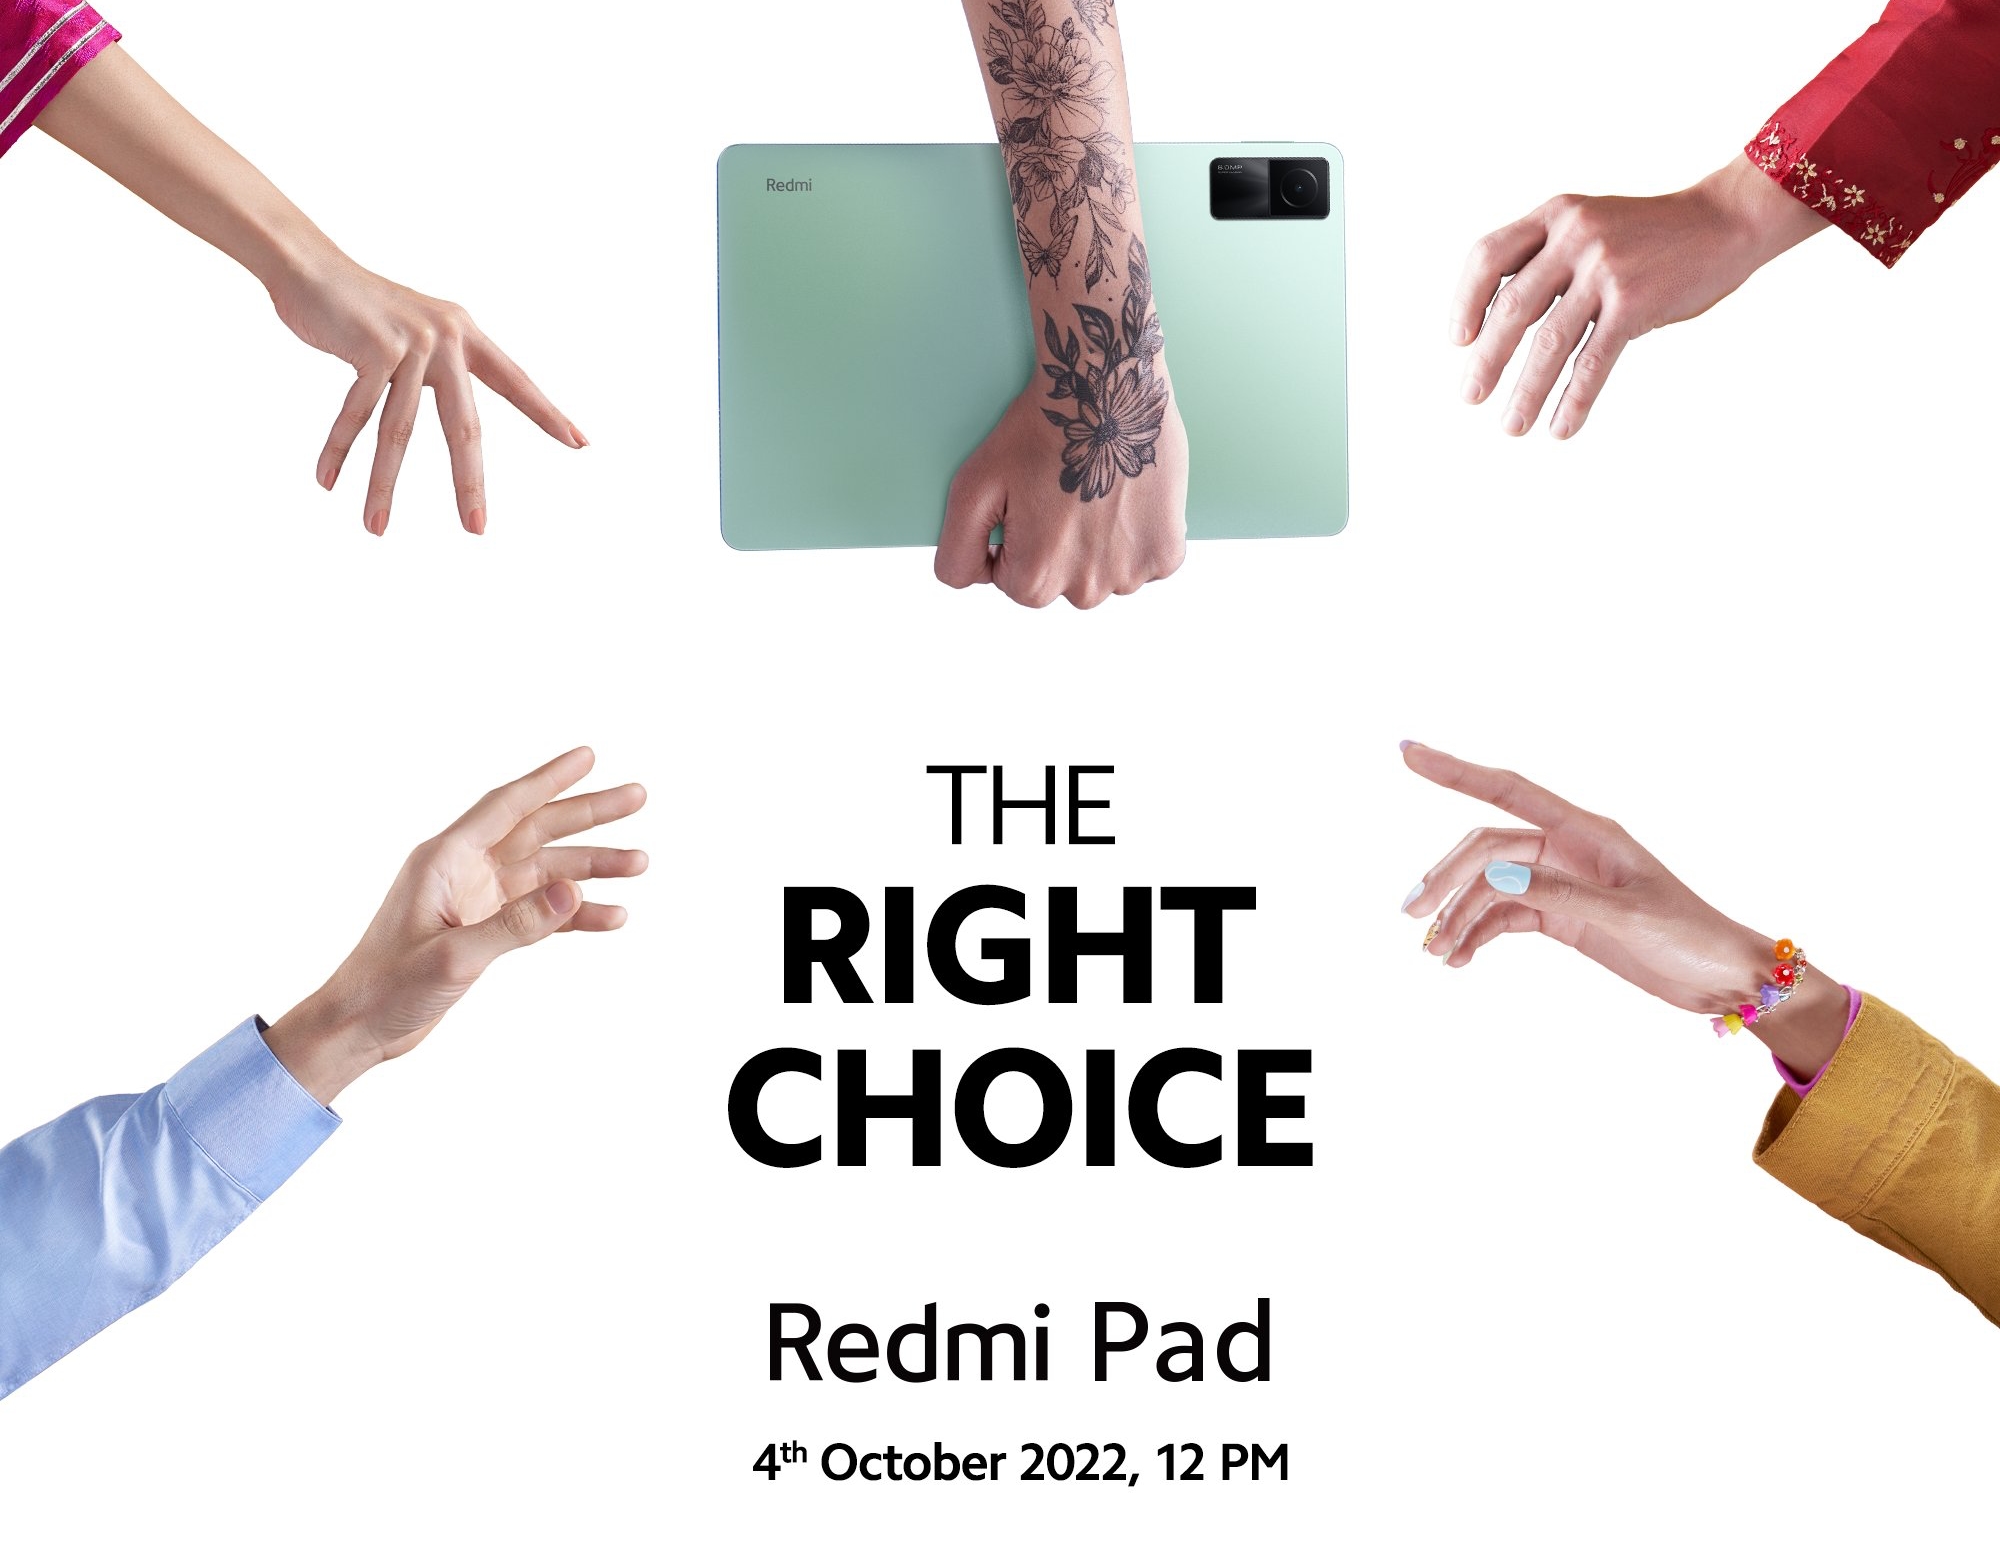 Confirmé : Le Redmi Pad, doté d'une puce MediaTek, d'un écran de 11 pouces et d'une batterie de 8000 mAh, sera présenté le 4 octobre.